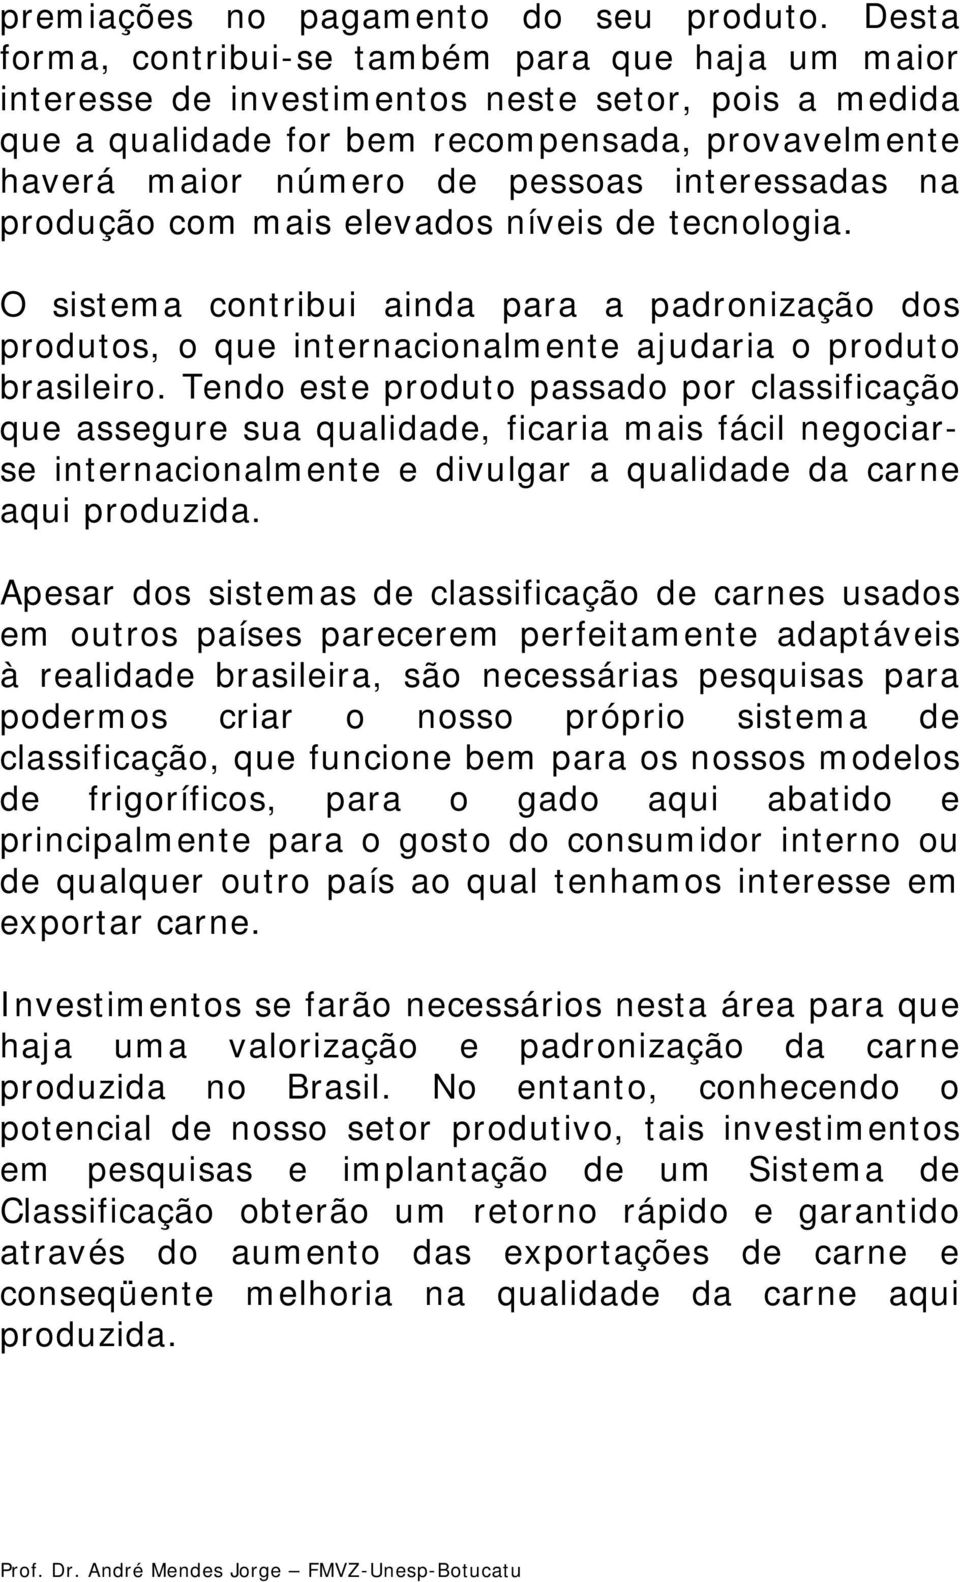 interessadas na produção com mais elevados níveis de tecnologia. O sistema contribui ainda para a padronização dos produtos, o que internacionalmente ajudaria o produto brasileiro.